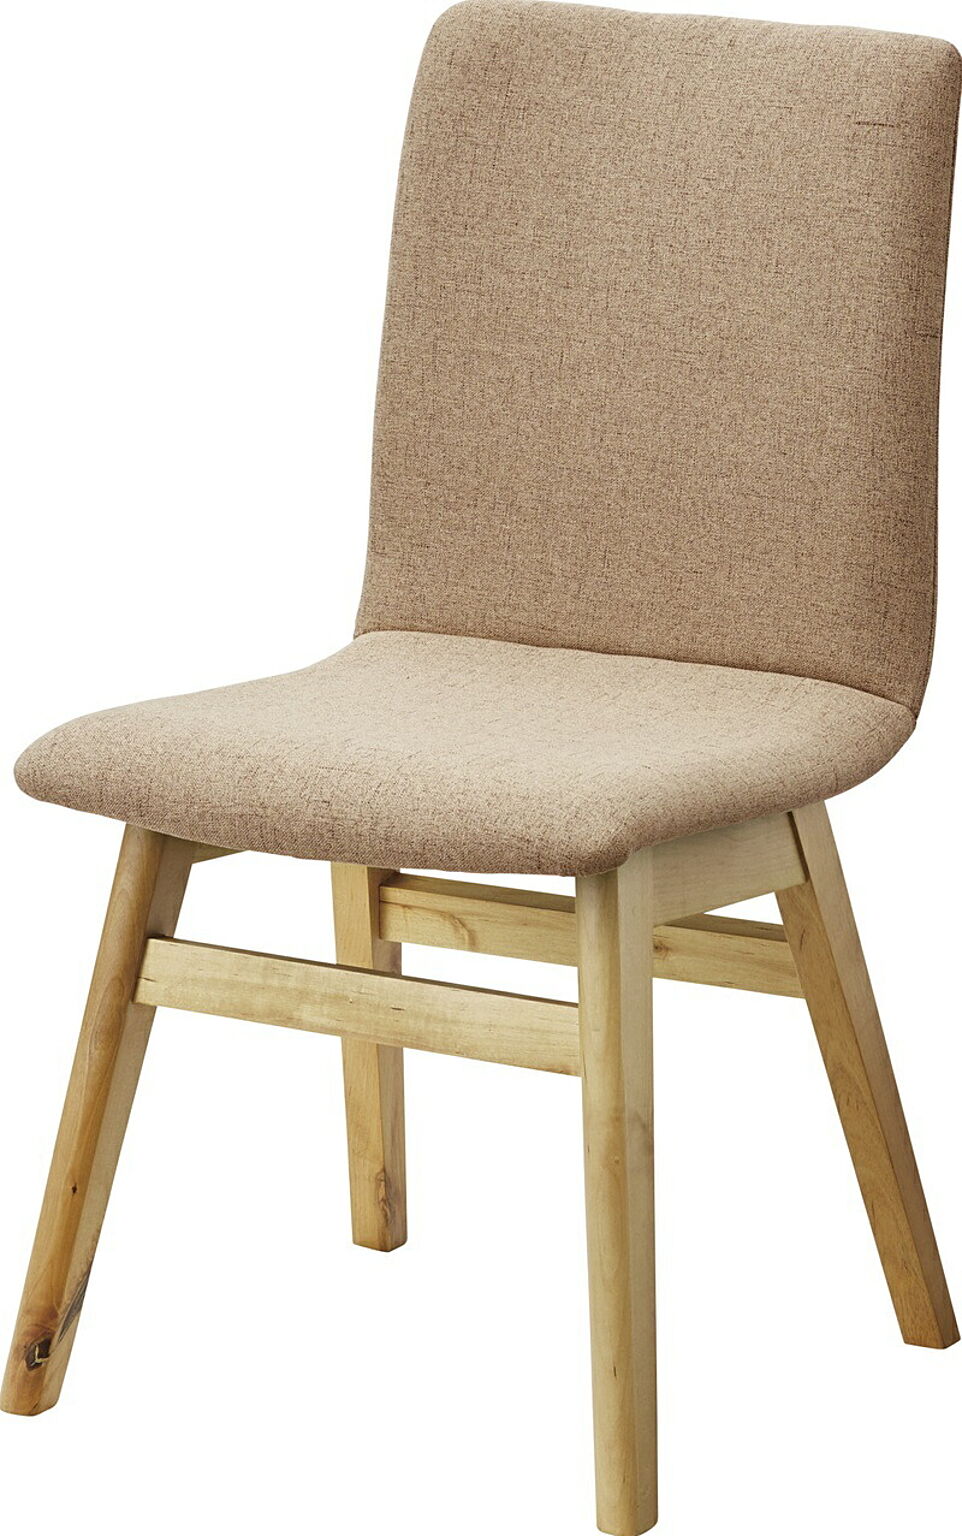 ダイニングチェア W45×D53×H81×SH43 ベージュ チェア ダイニングチェア ファブリックチェア 木製 食堂椅子 布地 おしゃれ ナチュラル 北欧 シンプル かわいい 完成品 食卓用椅子